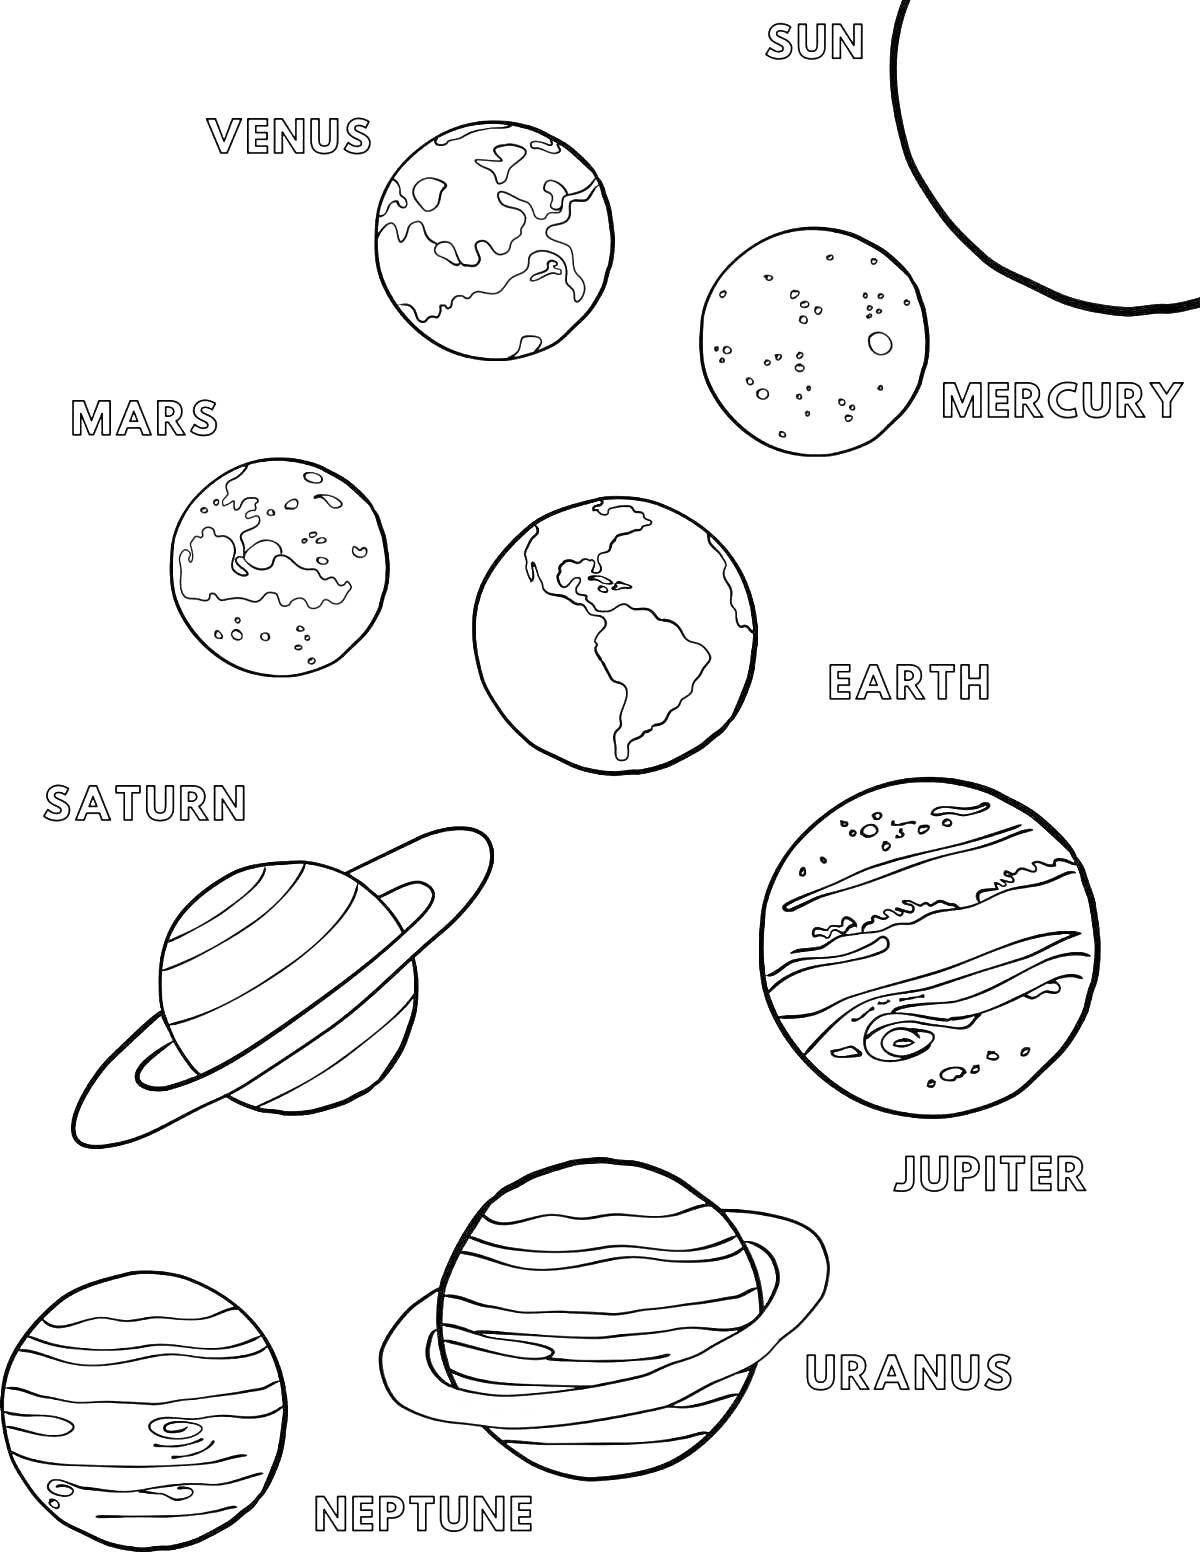 Раскраска Планеты солнечной системы: Венера, Меркурий, Земля, Марс, Юпитер, Сатурн, Уран, Нептун и Солнце